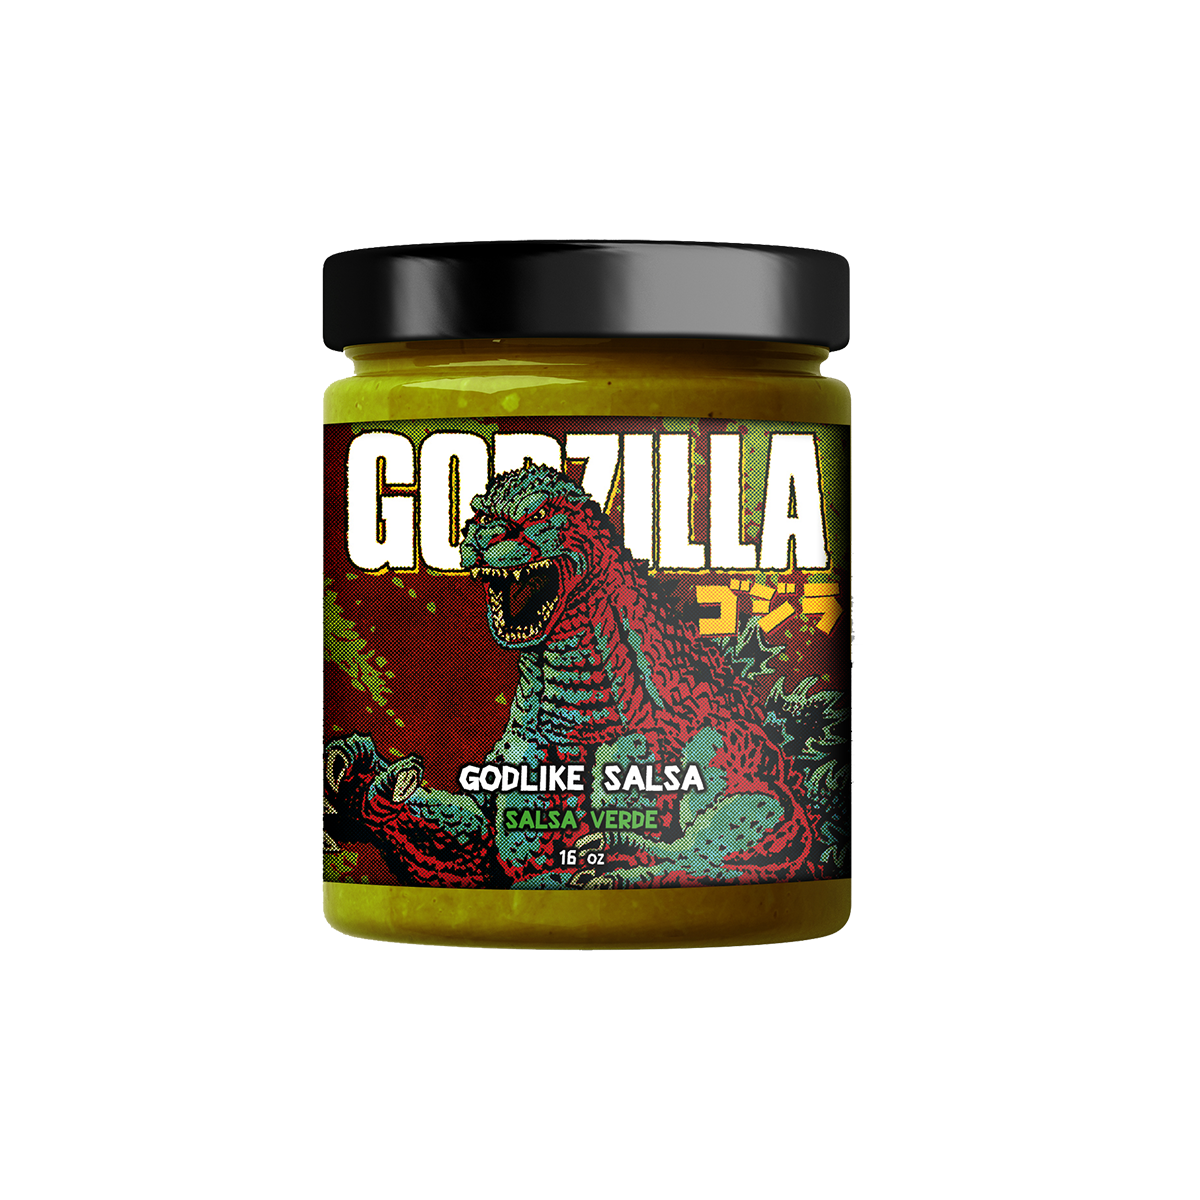 Godzilla's Godlike Salsa : Salsa Verde